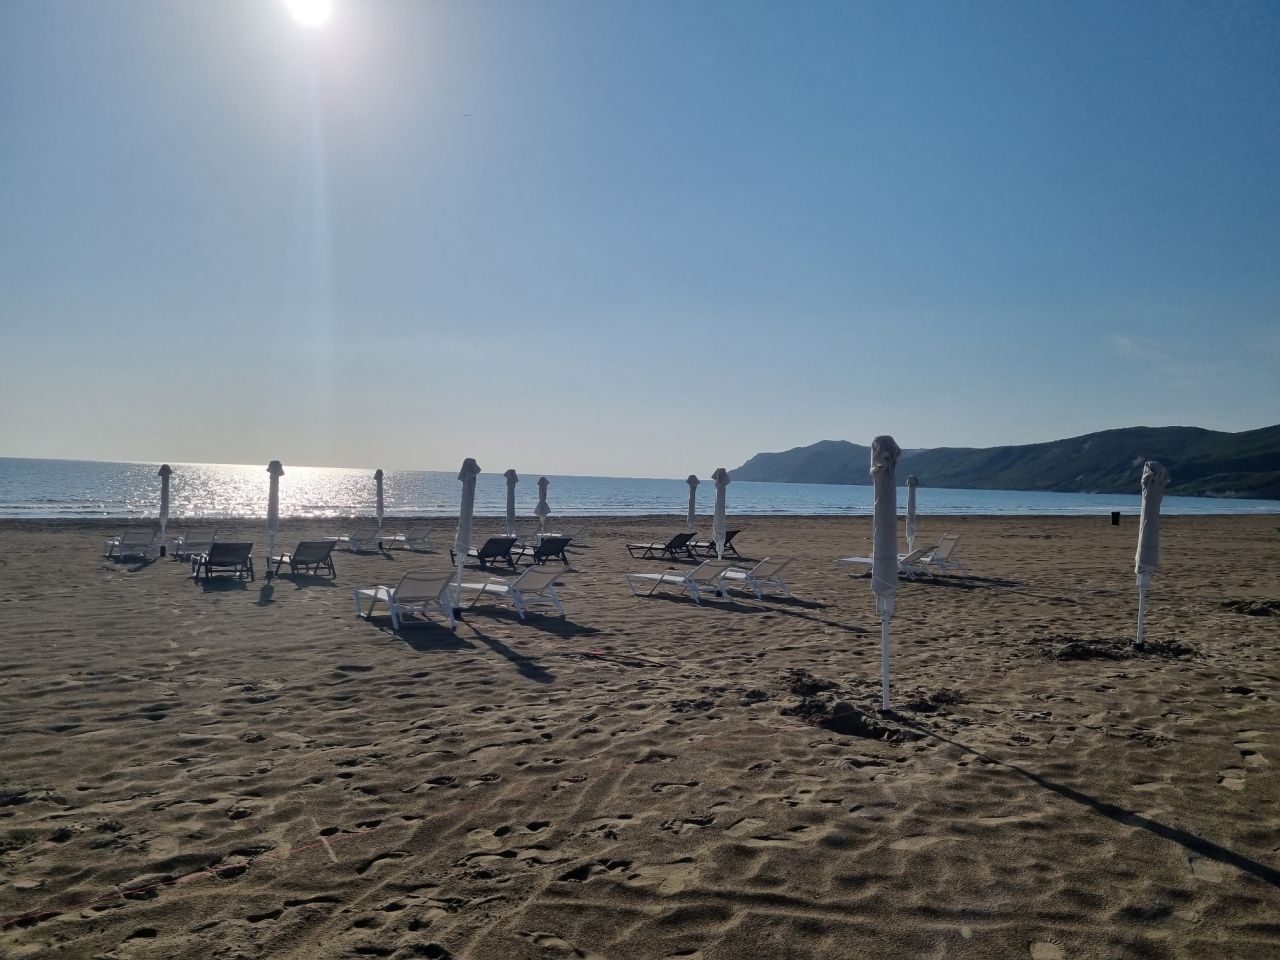 Ferienvilla in Albanien zu vermieten im Perla Resort, Lalzit Bay